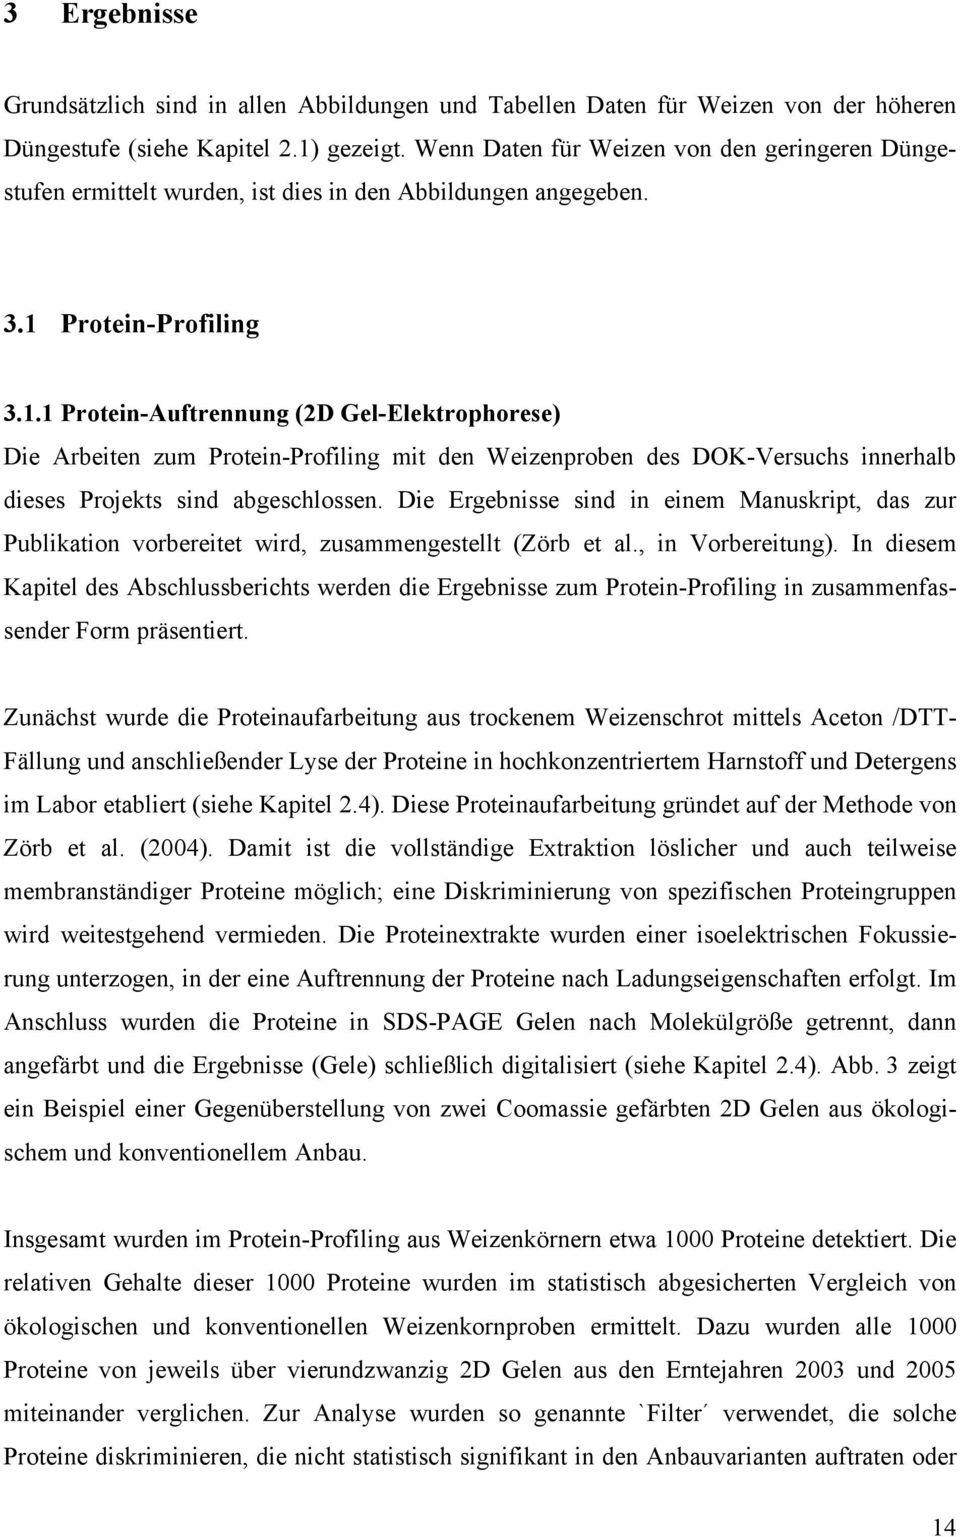 Protein-Profiling 3.1.1 Protein-Auftrennung (2D Gel-Elektrophorese) Die Arbeiten zum Protein-Profiling mit den Weizenproben des DOK-Versuchs innerhlb dieses Projekts sind bgeschlossen.